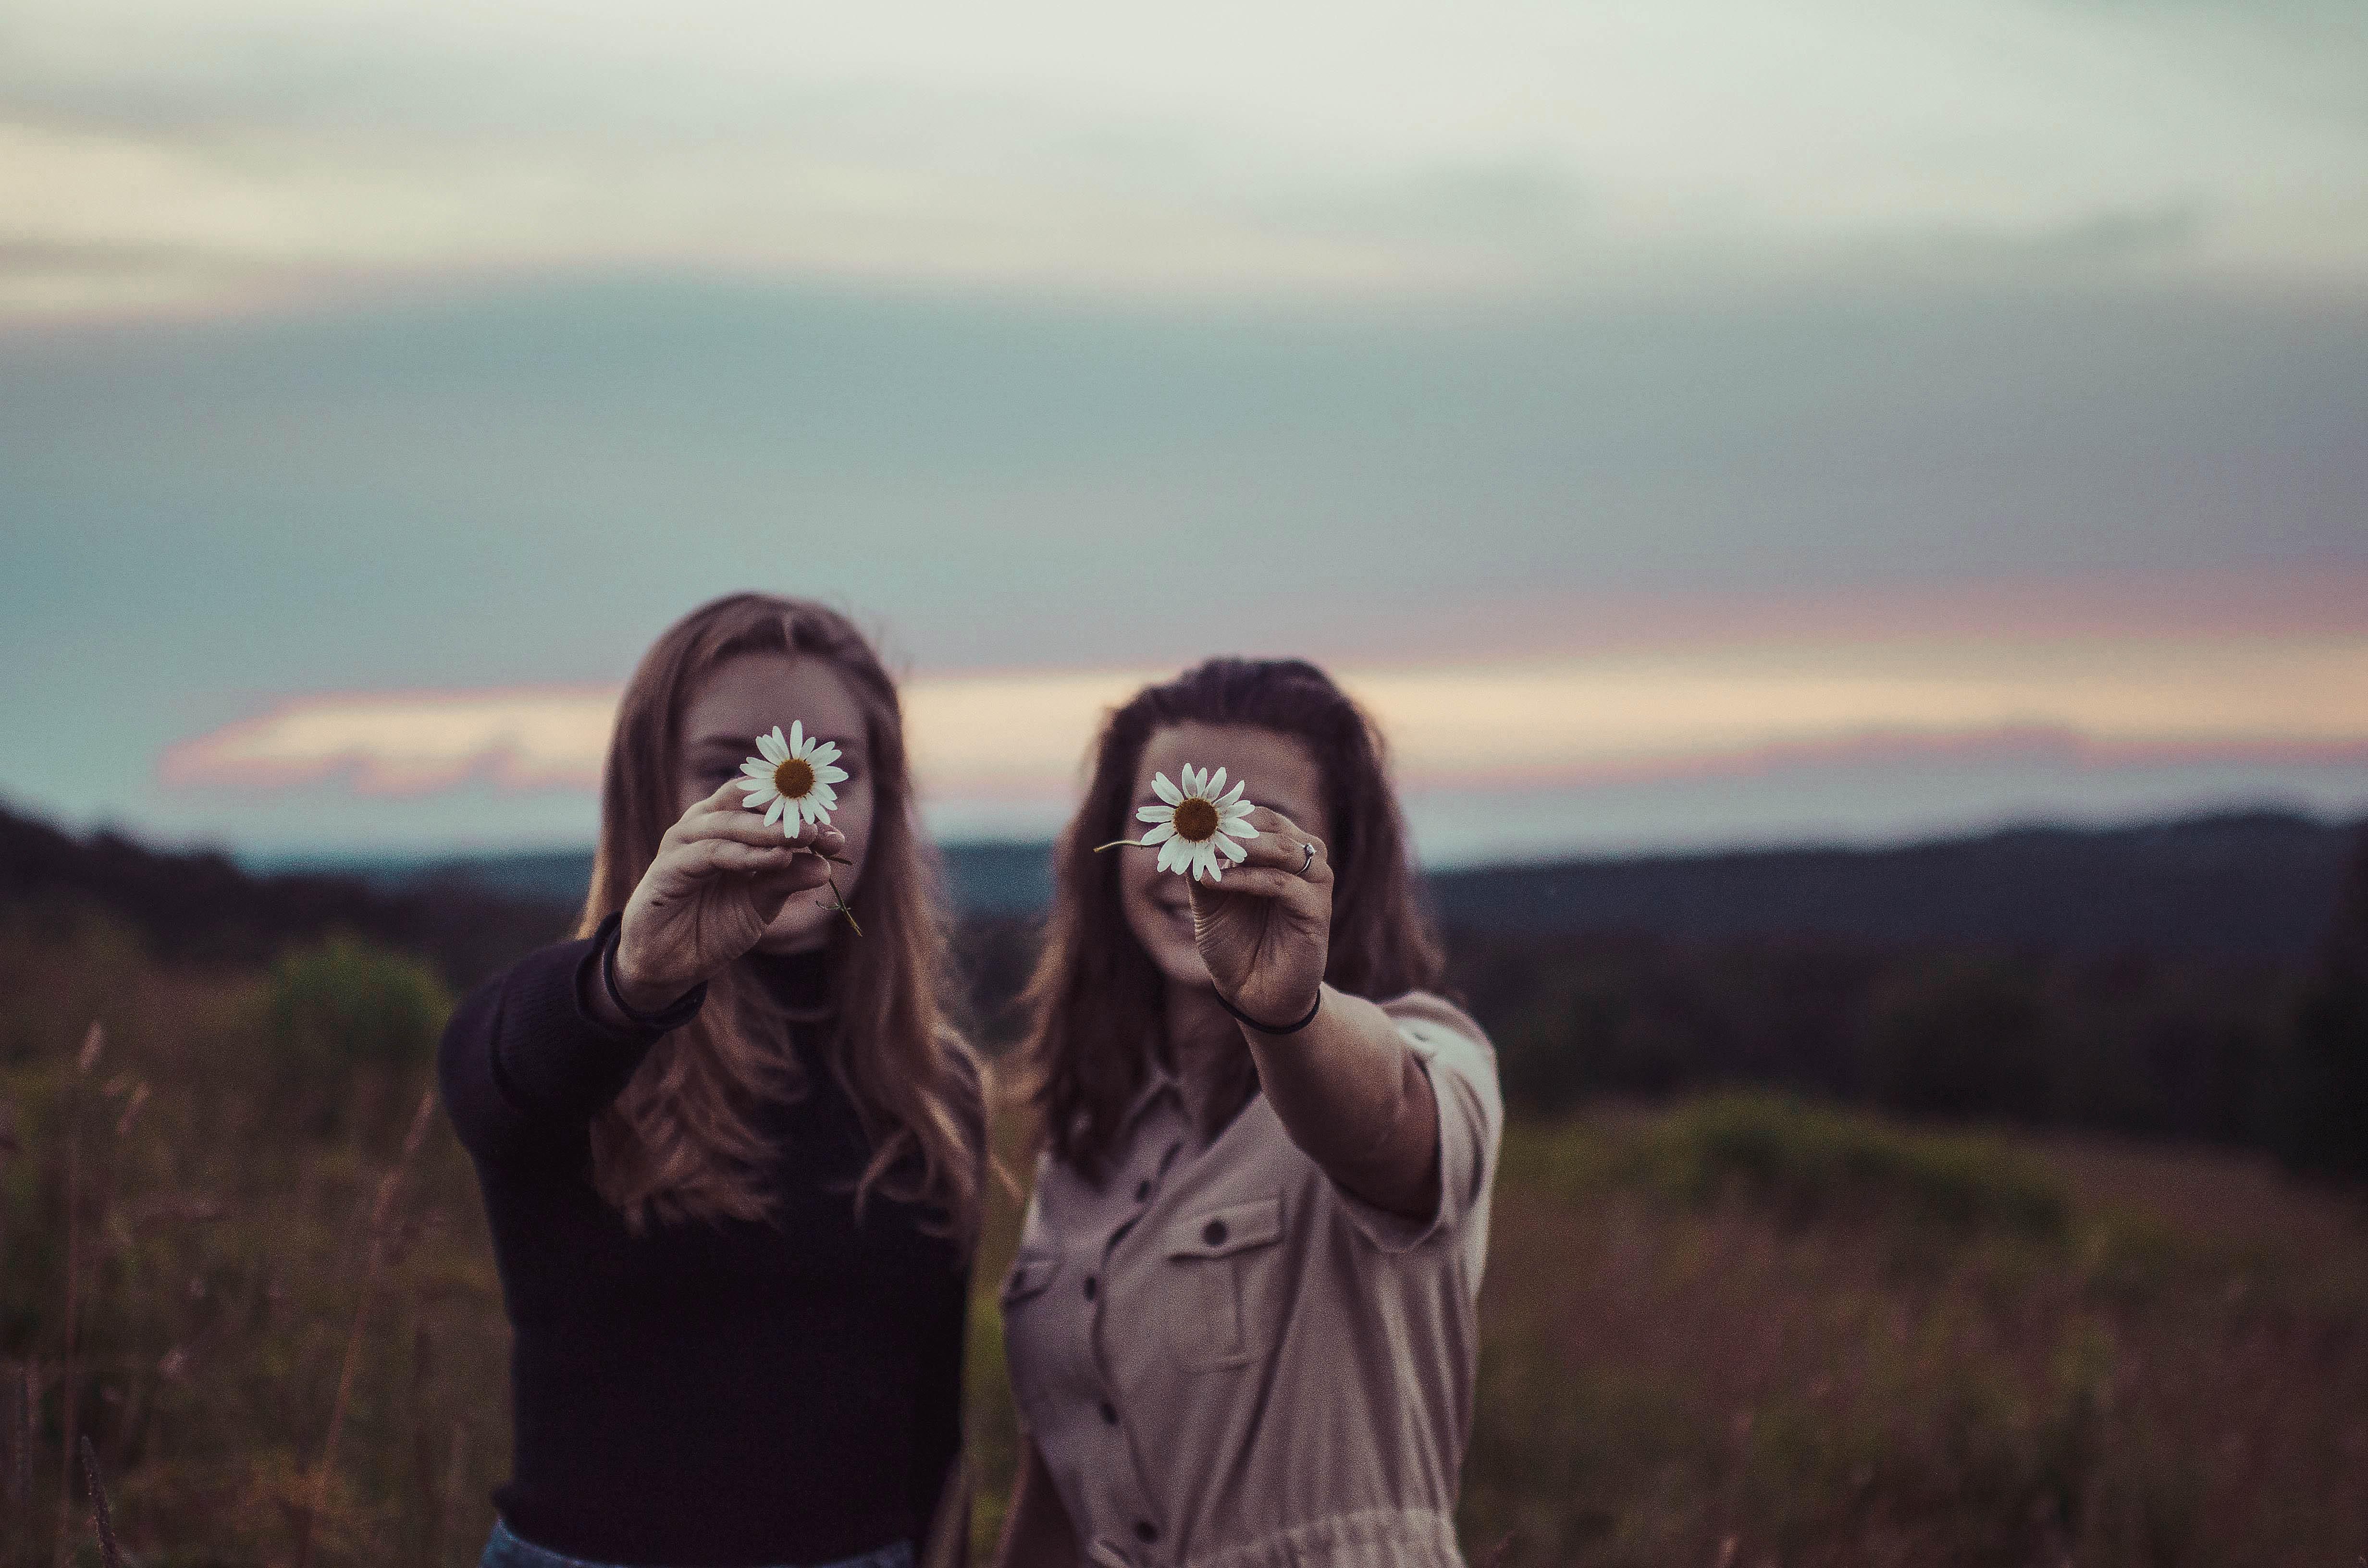 két lány egy réten, virágot tartva az arcuk elé